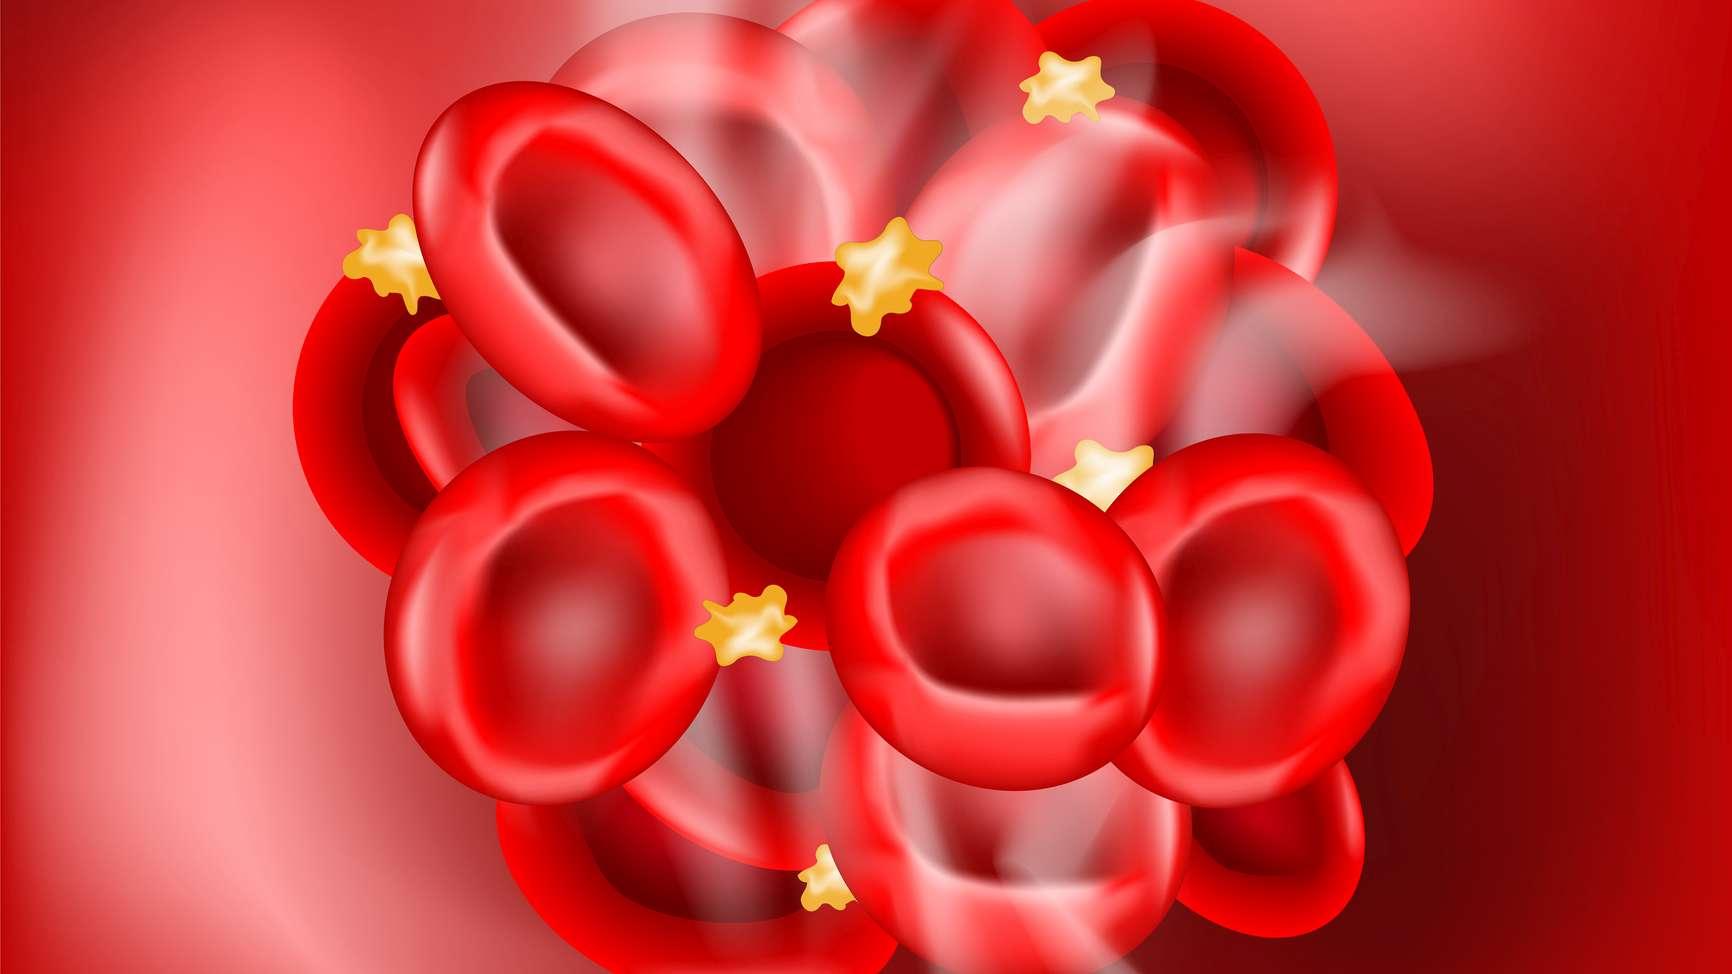 Blutgerinnsel auf rotem Hintergrund. Thrombus, der ein Blutgefäß verstopft hat. Blutgerinnung. Hämostase. Vektor-Illustration